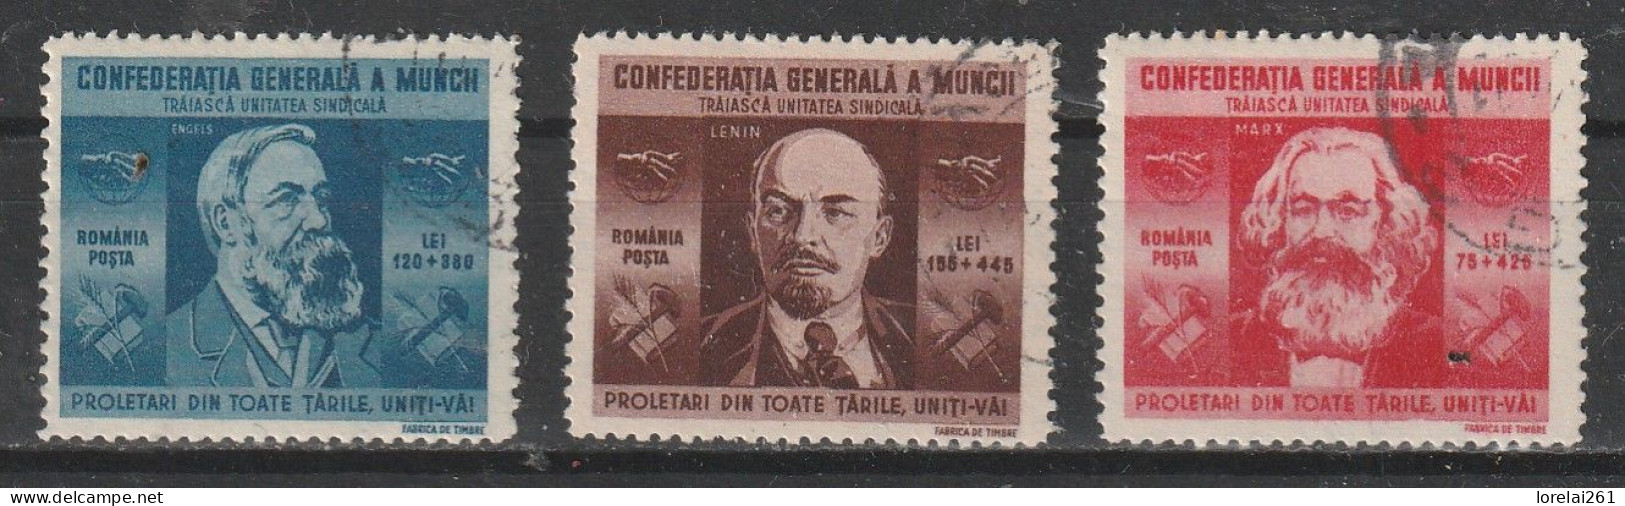 1945 - Confédération Générale Du Travail Mi No 861/863 - Used Stamps